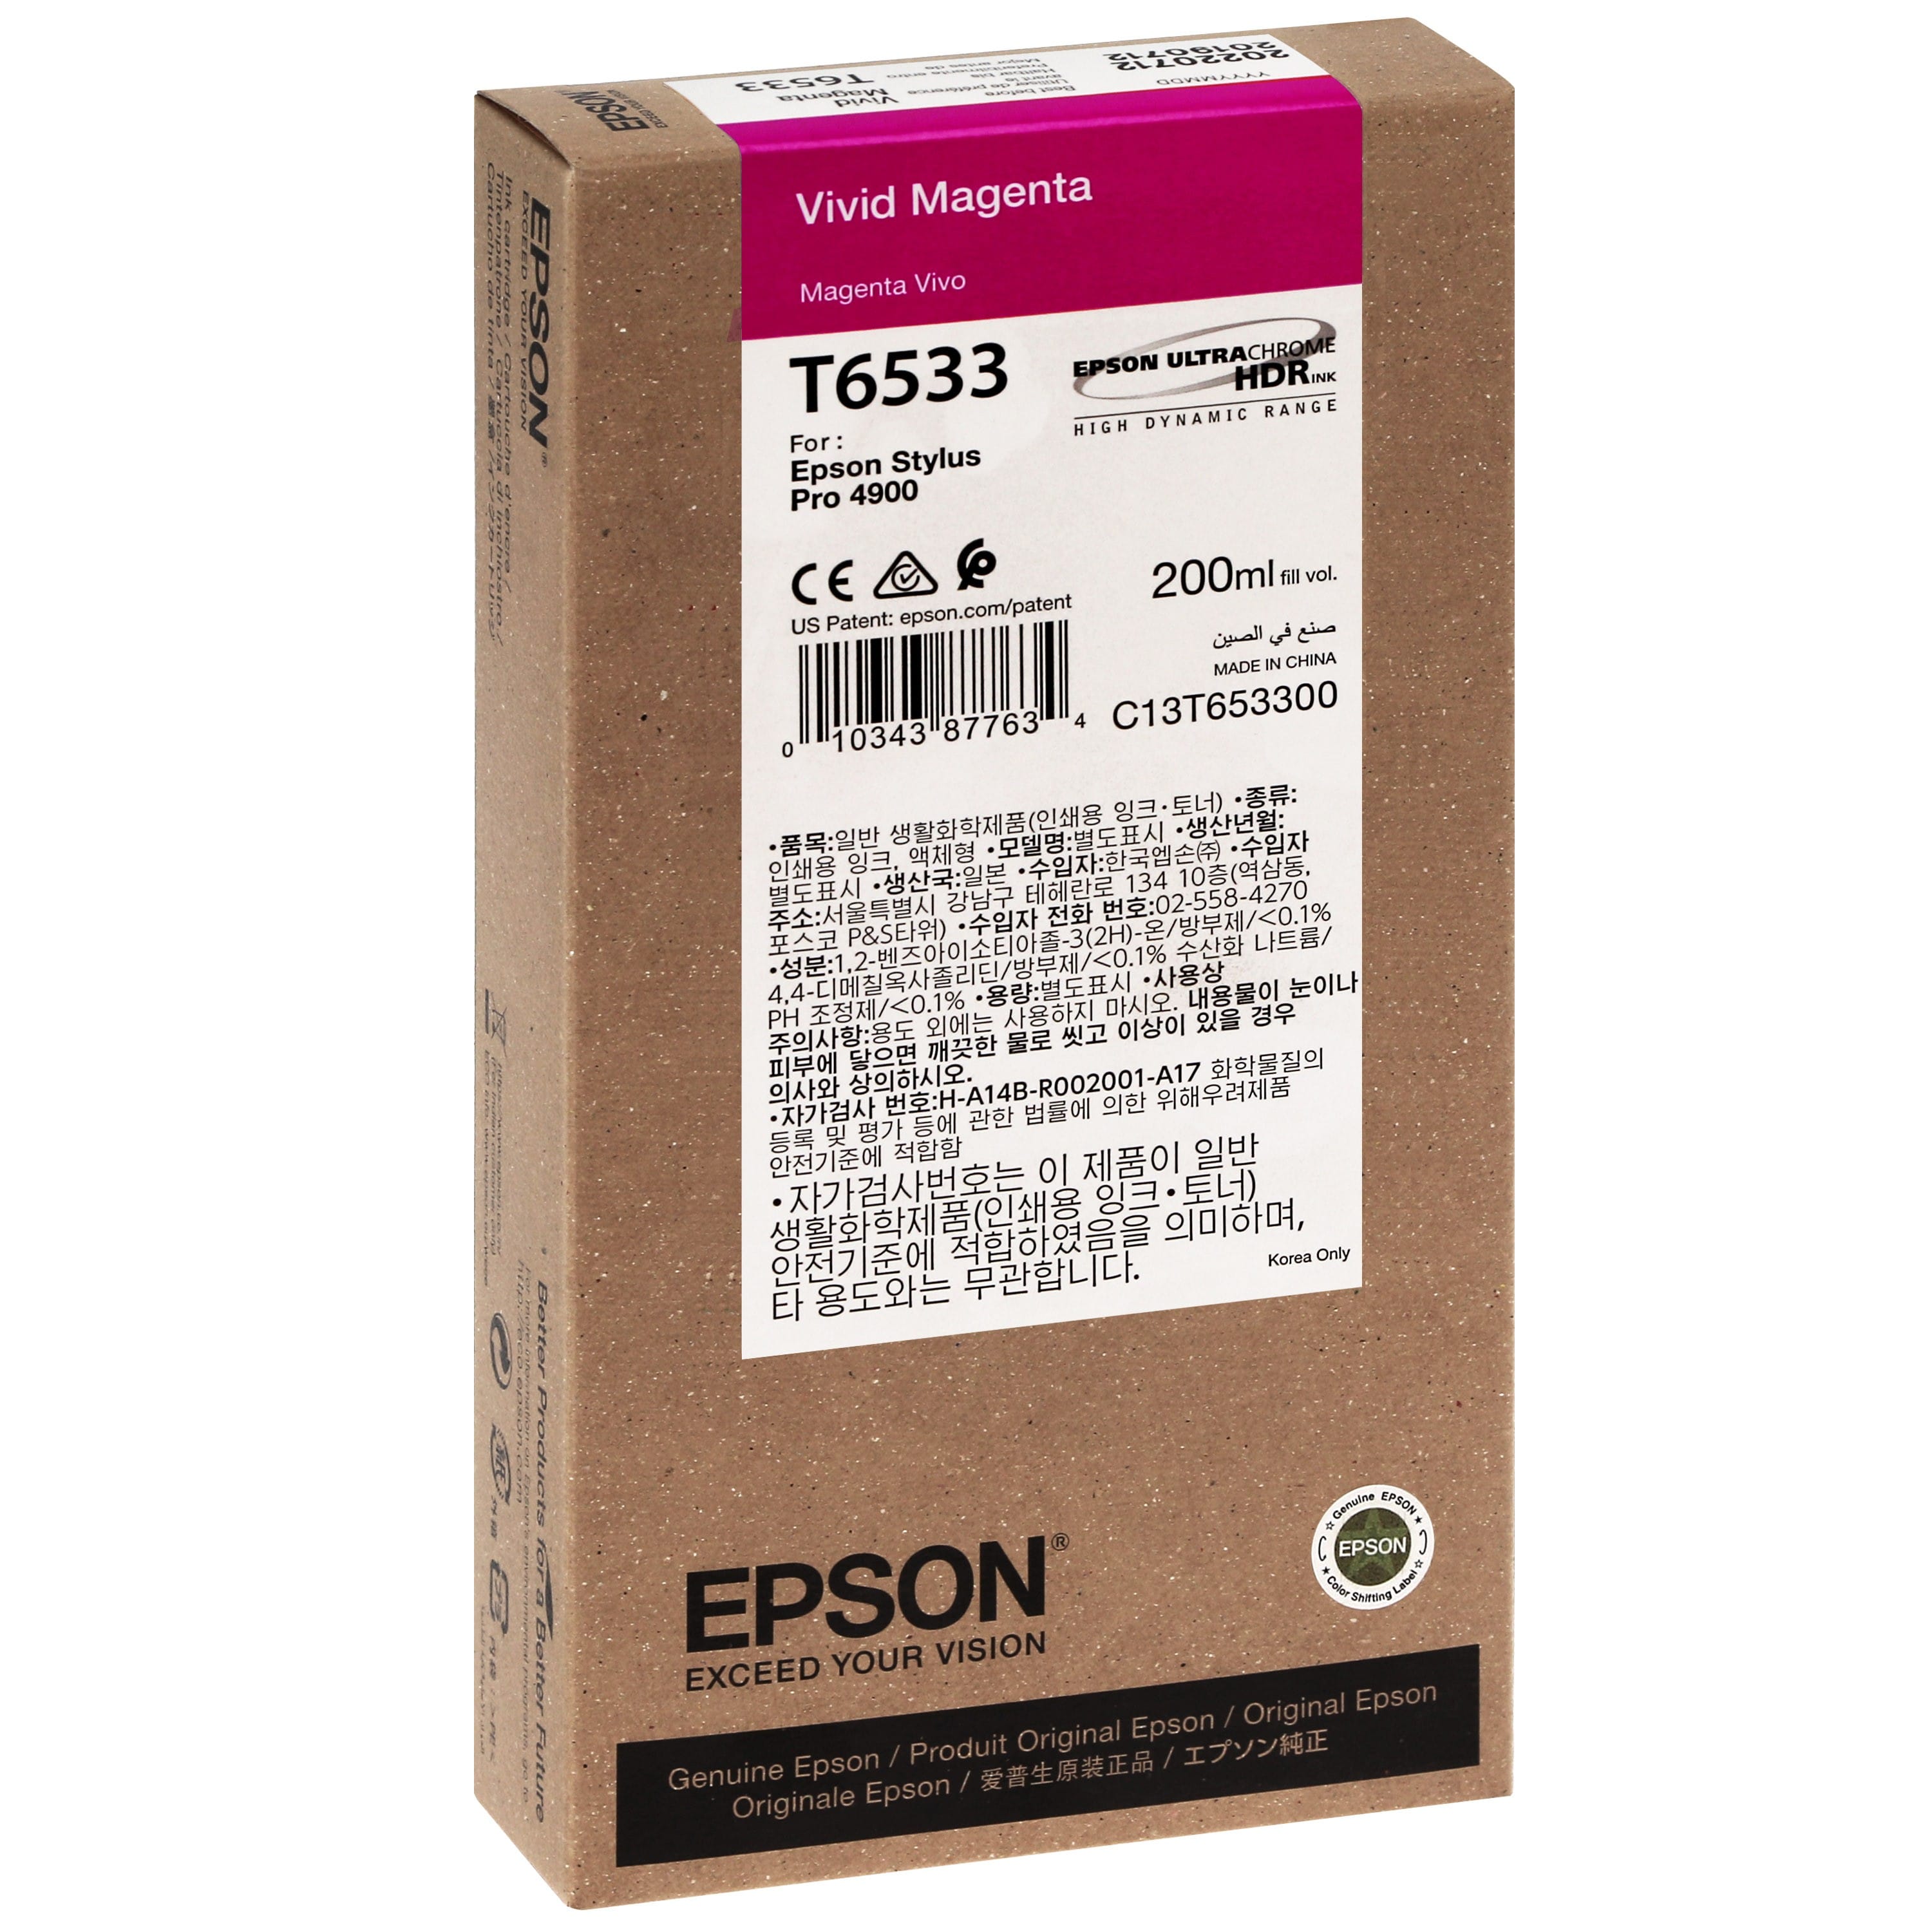 EPSON - Cartouche d'encre traceur T6533 Pour imprimante 4900 Vivid Magenta - 200ml